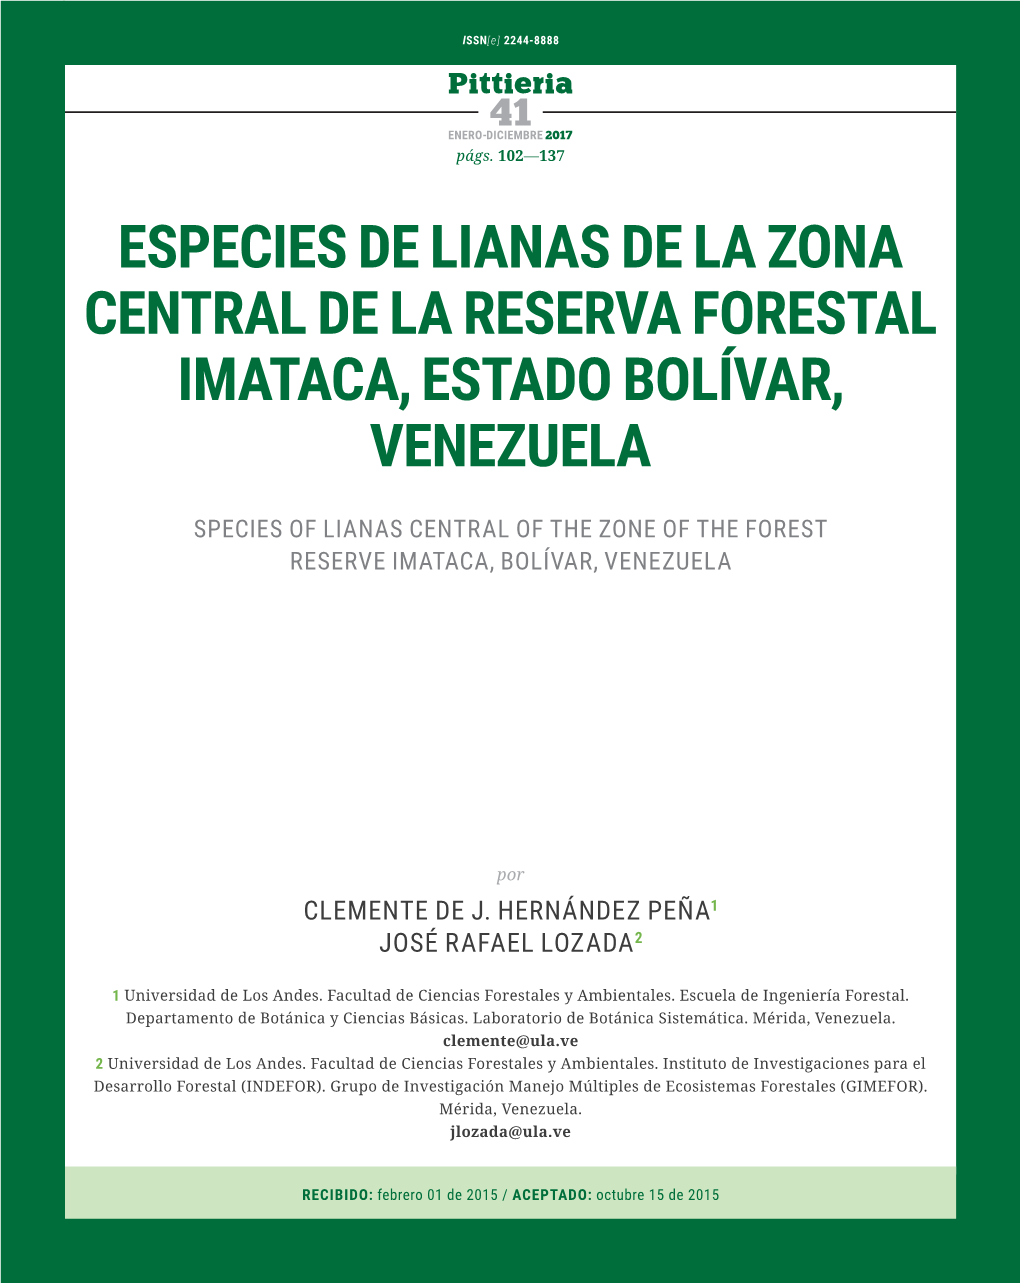 Especies De Lianas De La Zona Central De La Reserva Forestal Imataca, Estado Bolívar, Venezuela